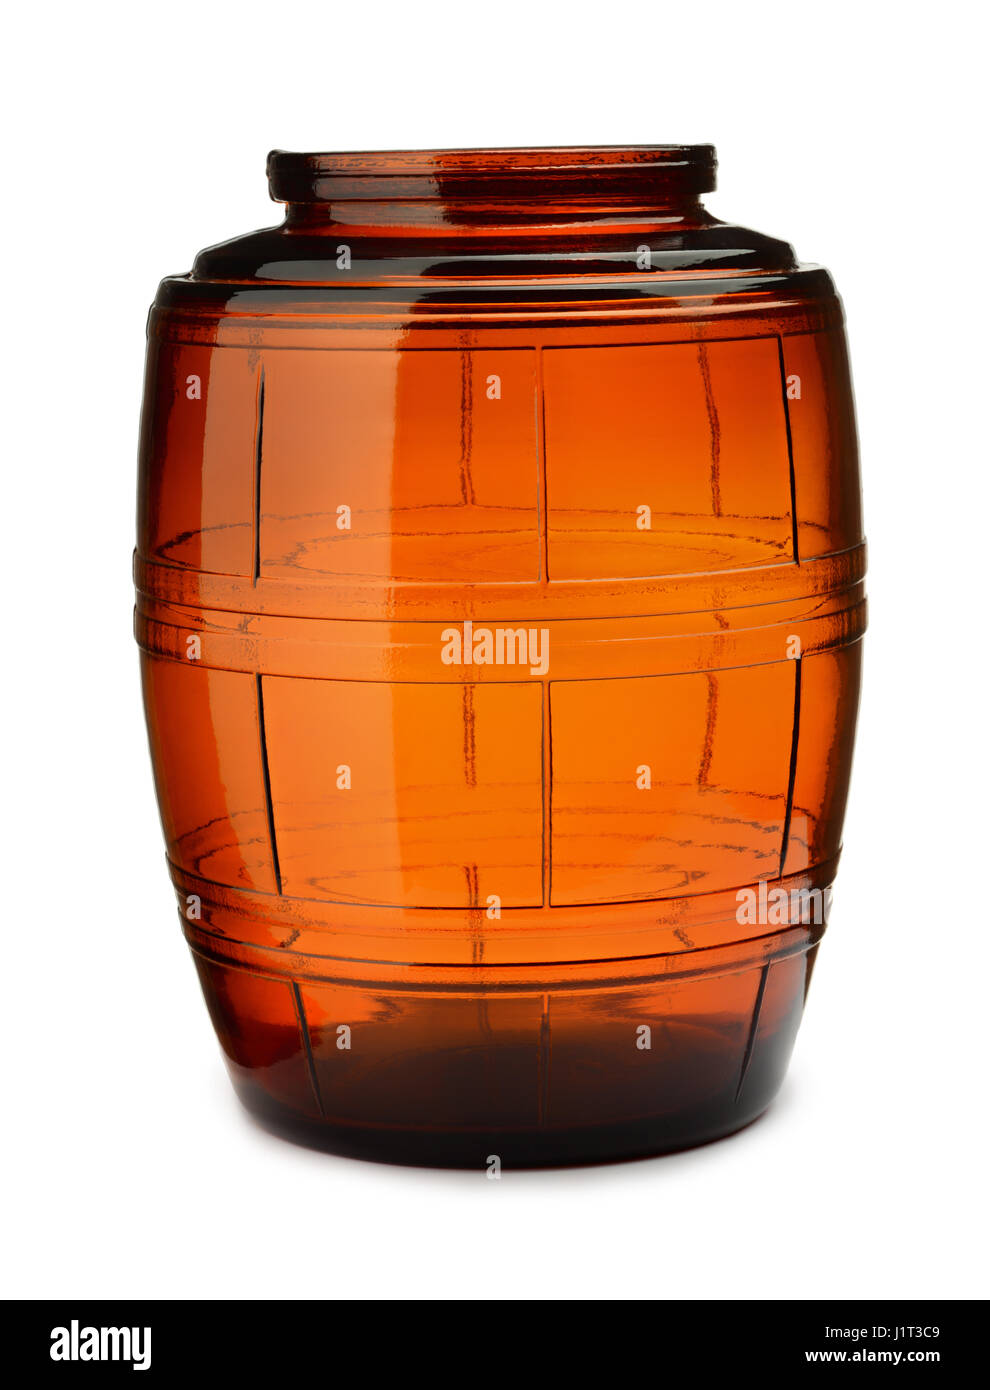 Antigua jarra de cristal marrón vacío aislado en blanco Foto de stock